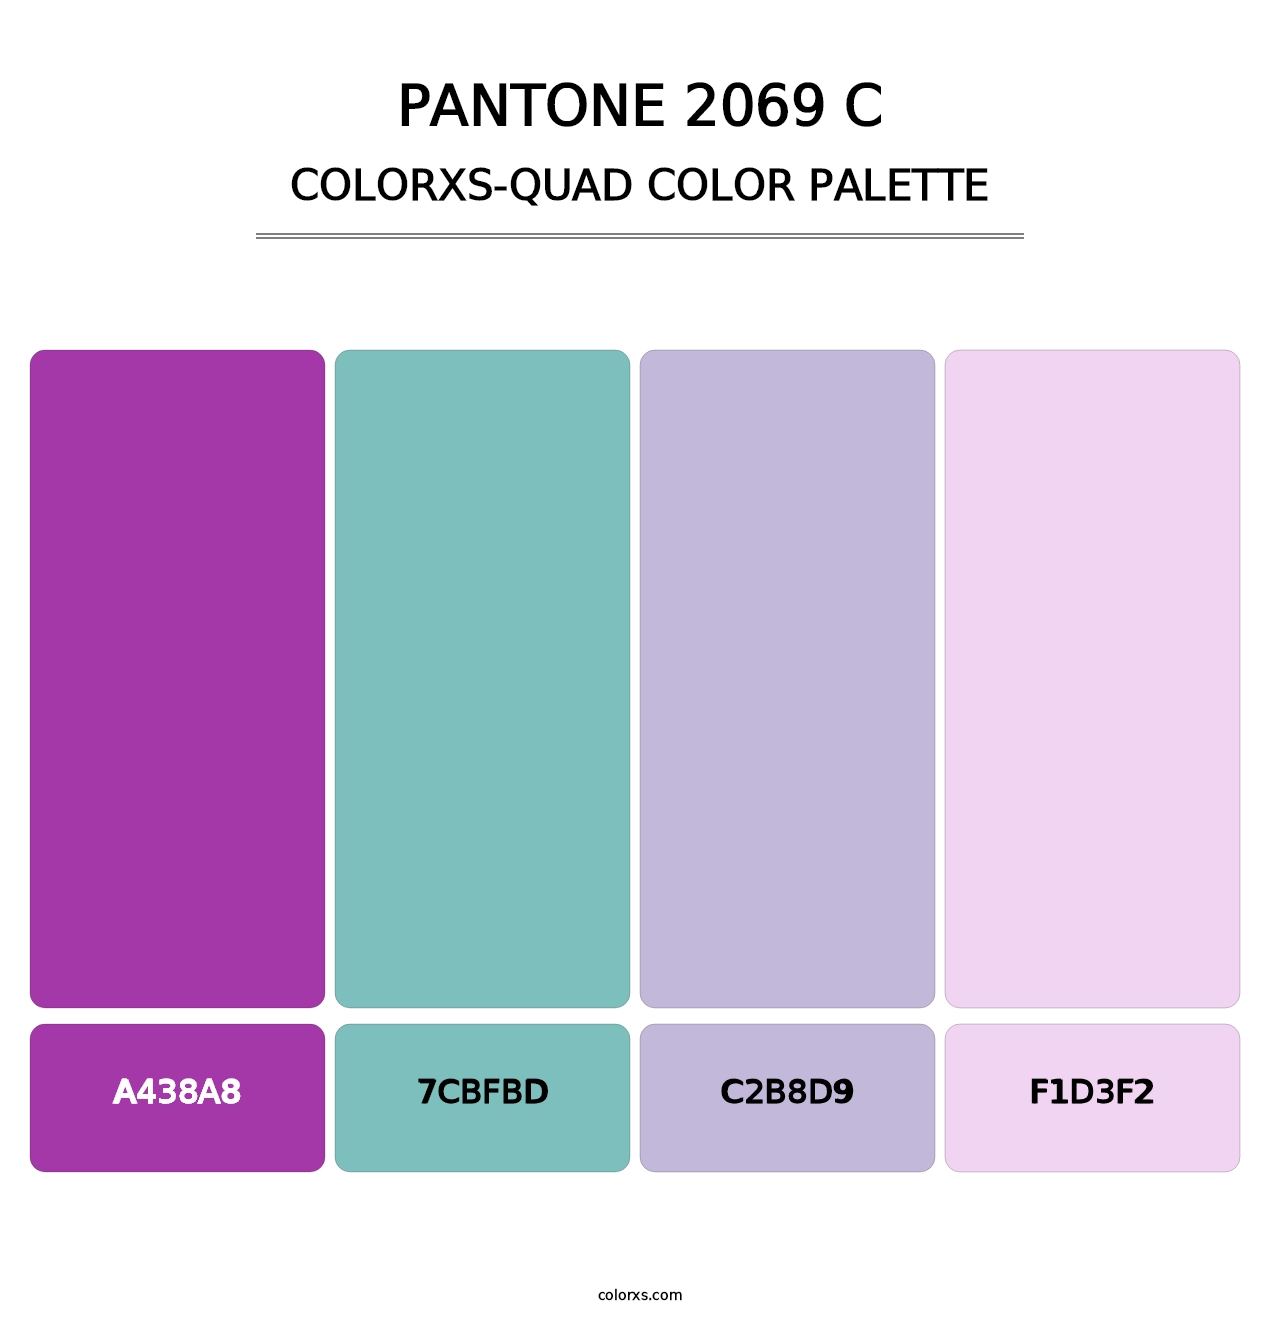 PANTONE 2069 C - Colorxs Quad Palette